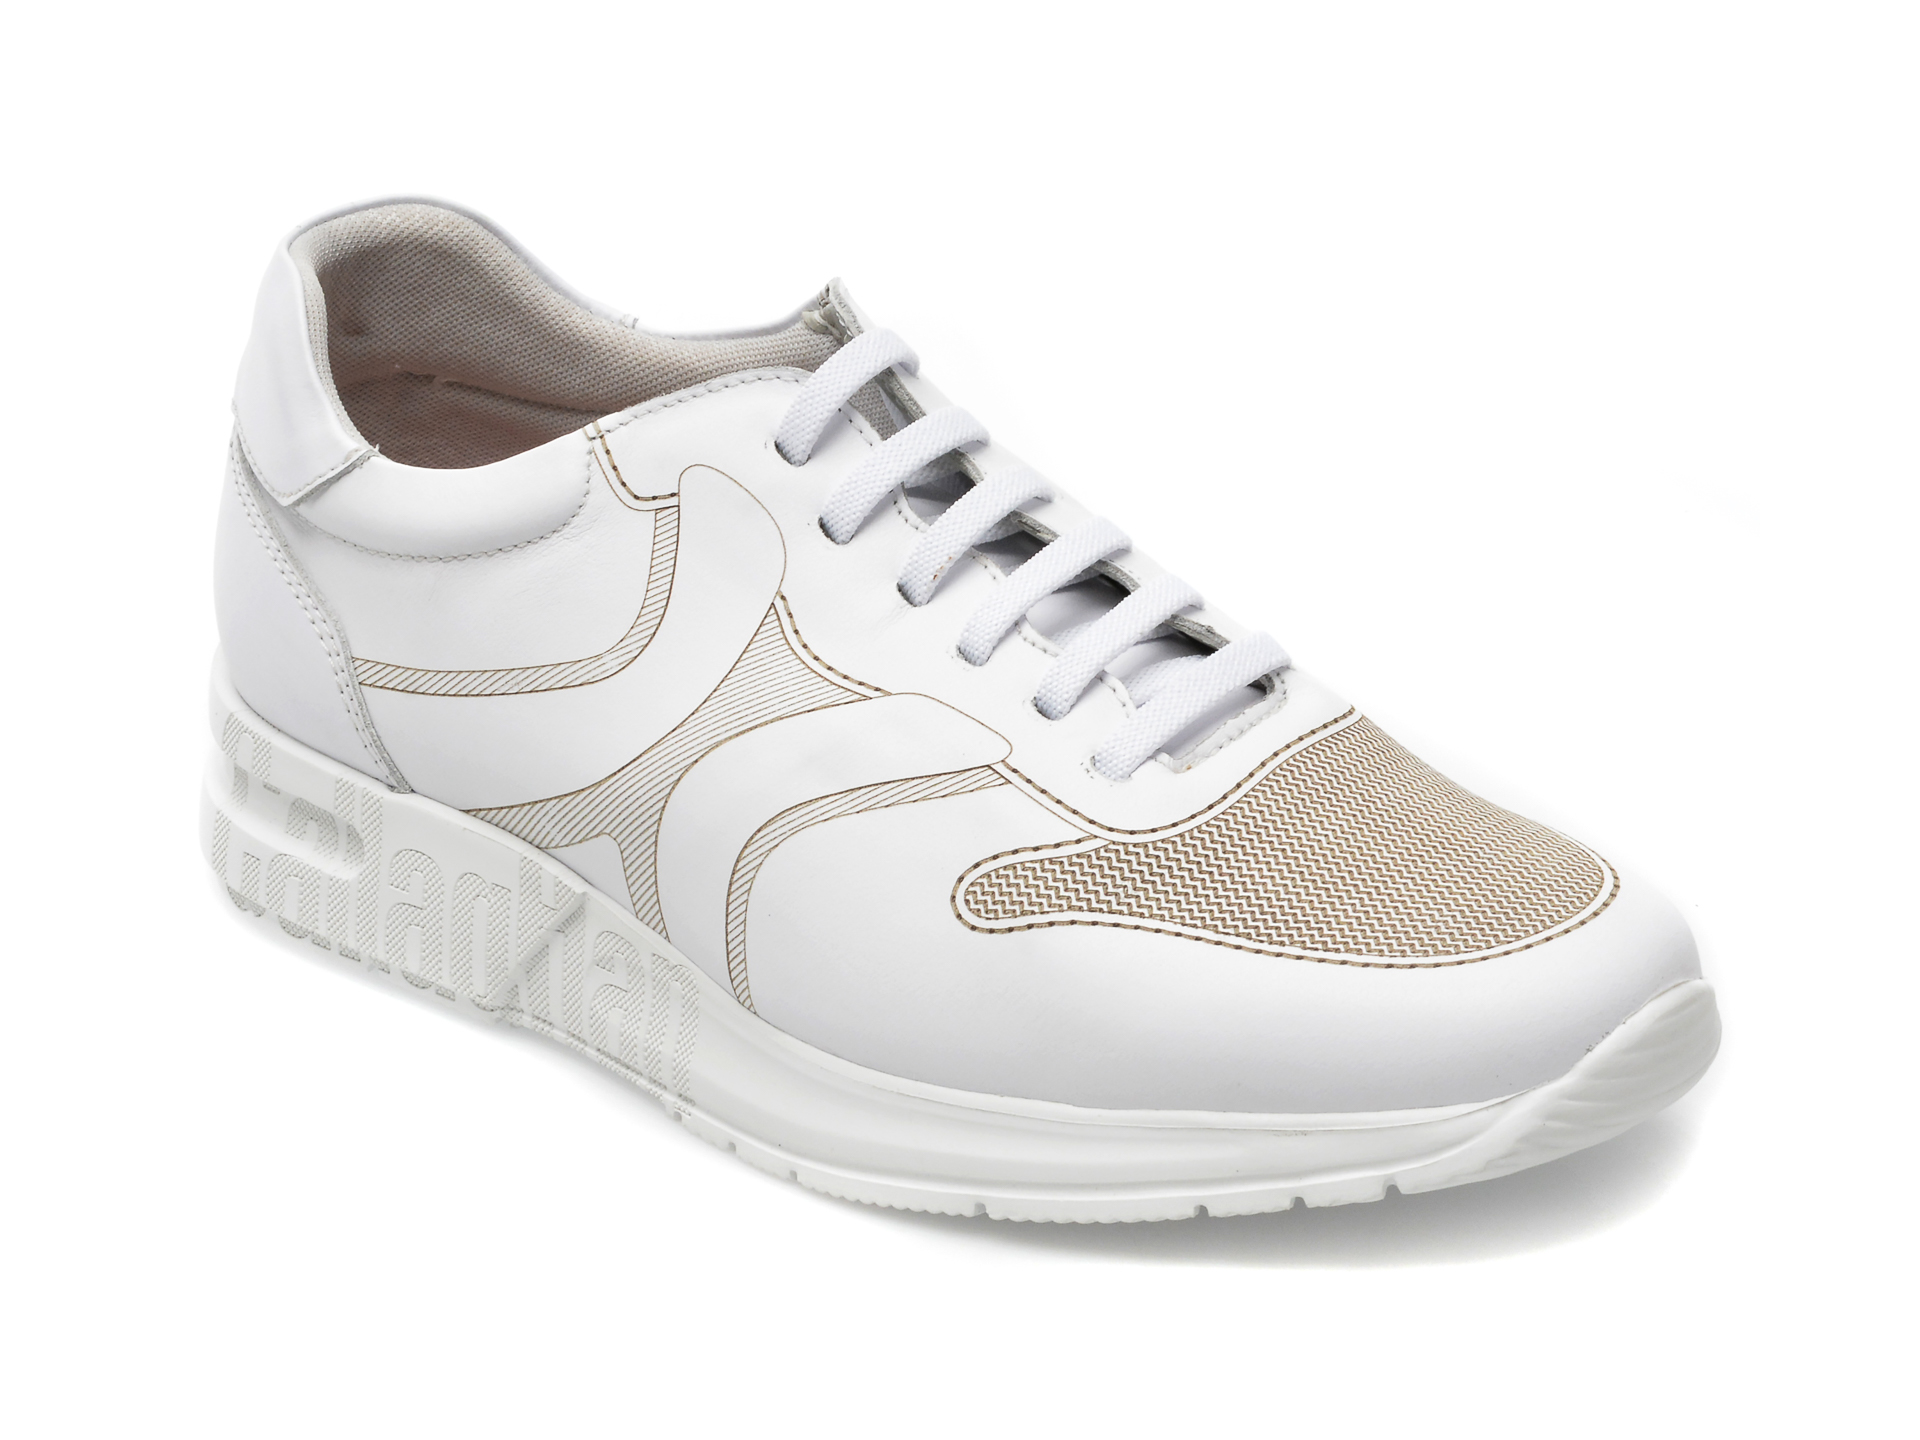 Pantofi CALLAGHAN albi, 91322, din piele naturala /barbati/pantofi